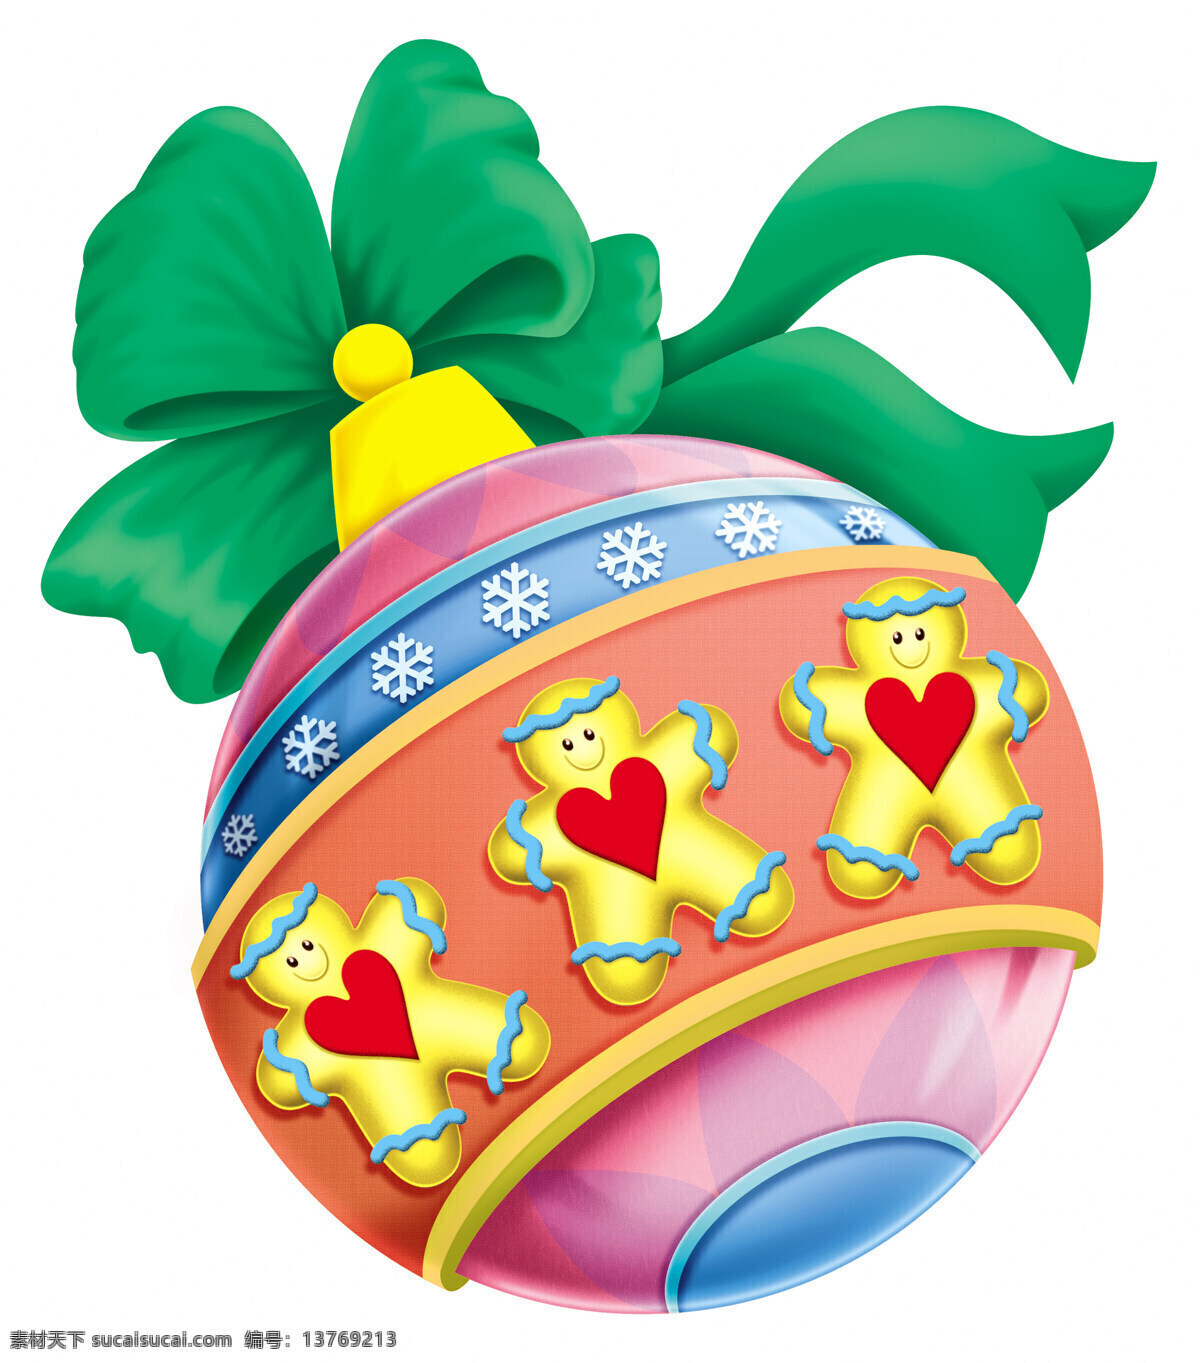 卡通 圆球 绿色礼物节 动漫小球 人物 环绕 动漫 可爱